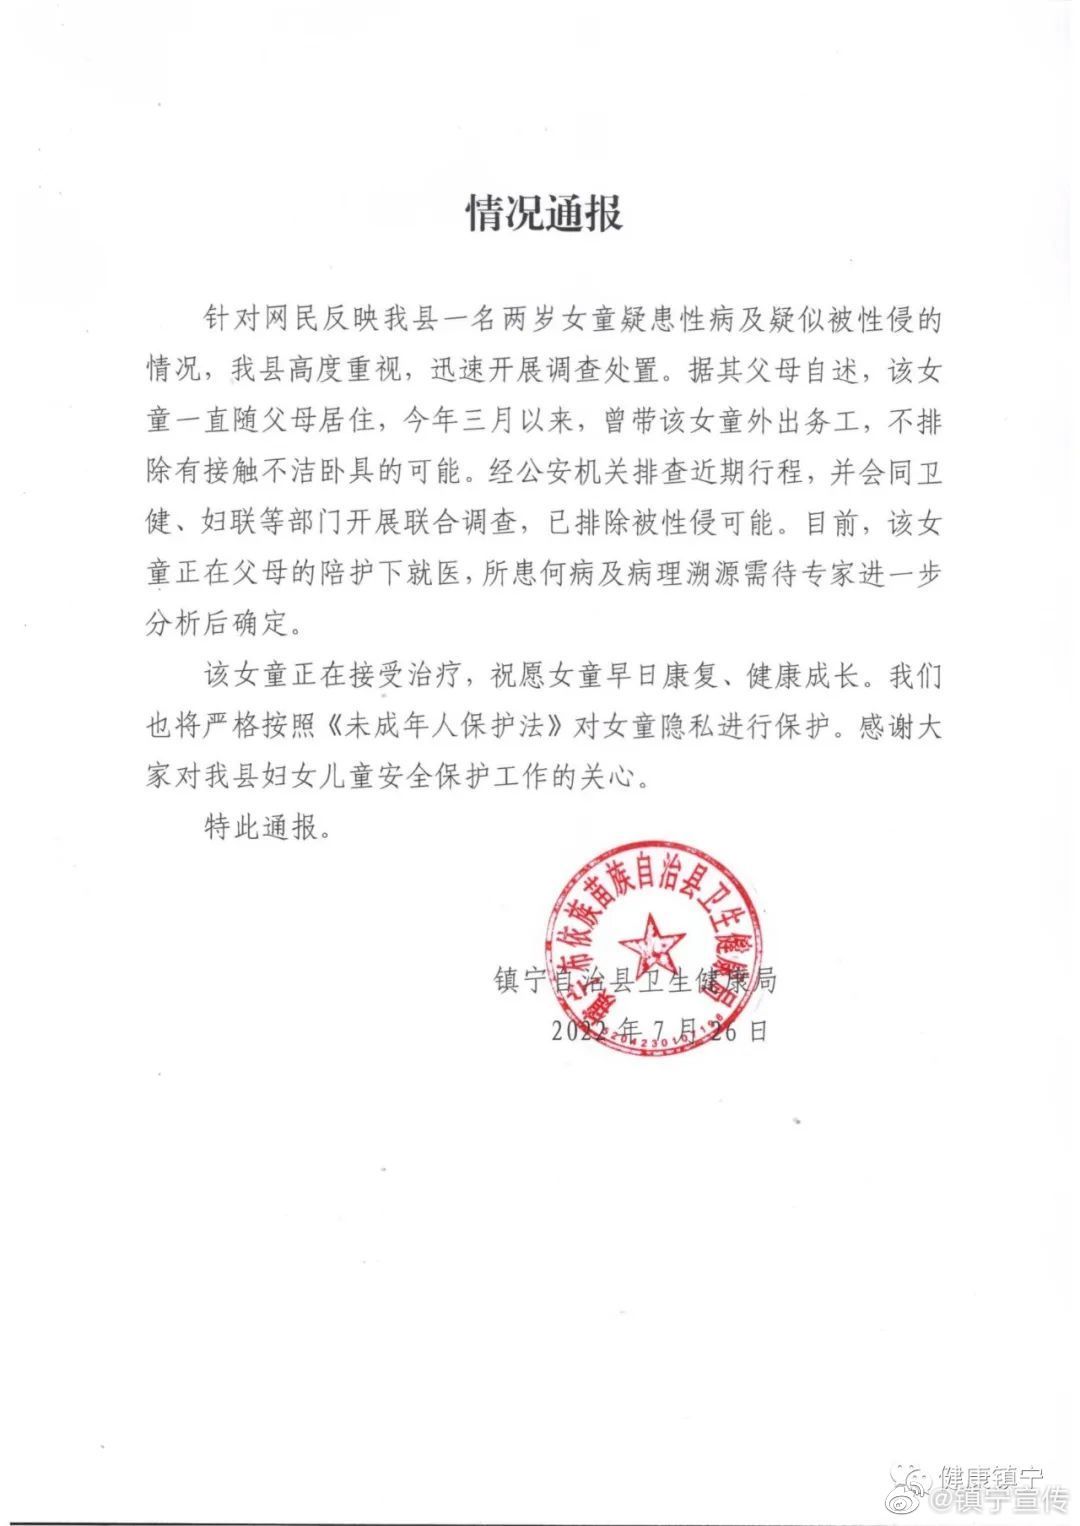 贵州镇宁回应2岁女童疑患性病 官方:排除遭性侵